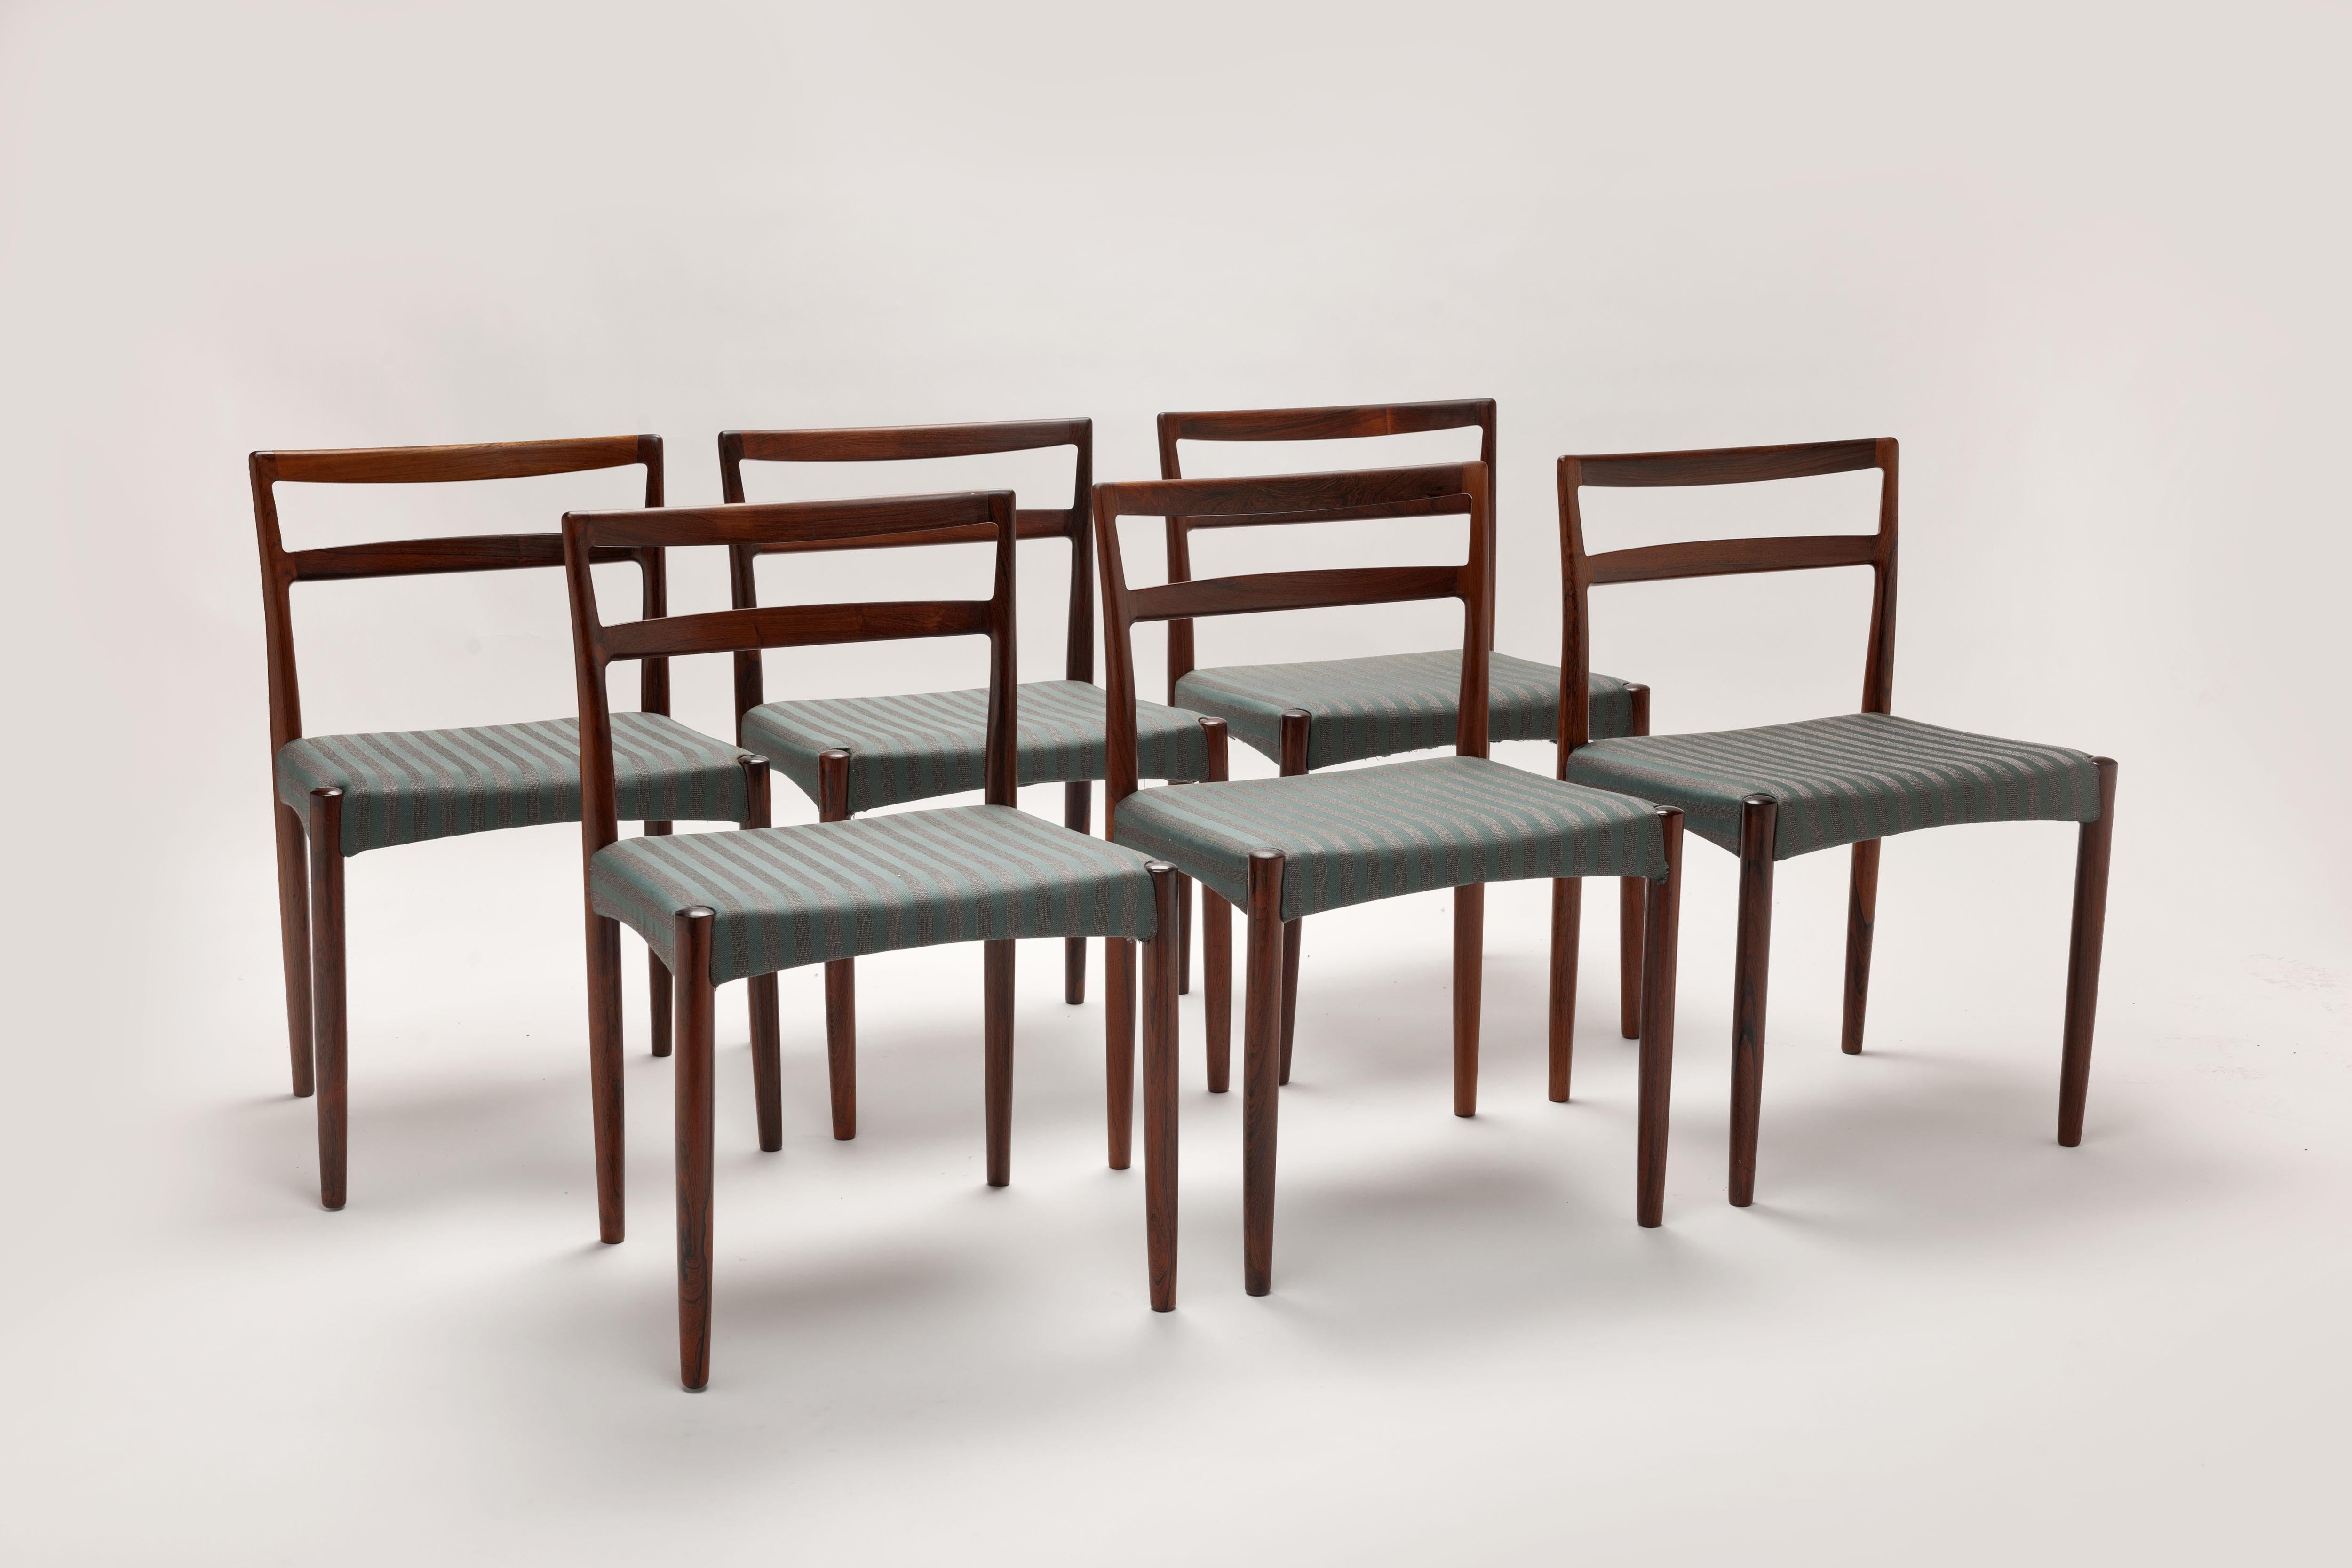 Satz von sechs massiven Palisander-Esszimmerstühlen, entworfen 1961 vom dänischen Designer Harry Østergaard. Hergestellt in Dänemark von der Randers Møbelfabrik in den 1960er Jahren mit schönen Fugen an den Hinterbeinen. 
Zeitloses Design in